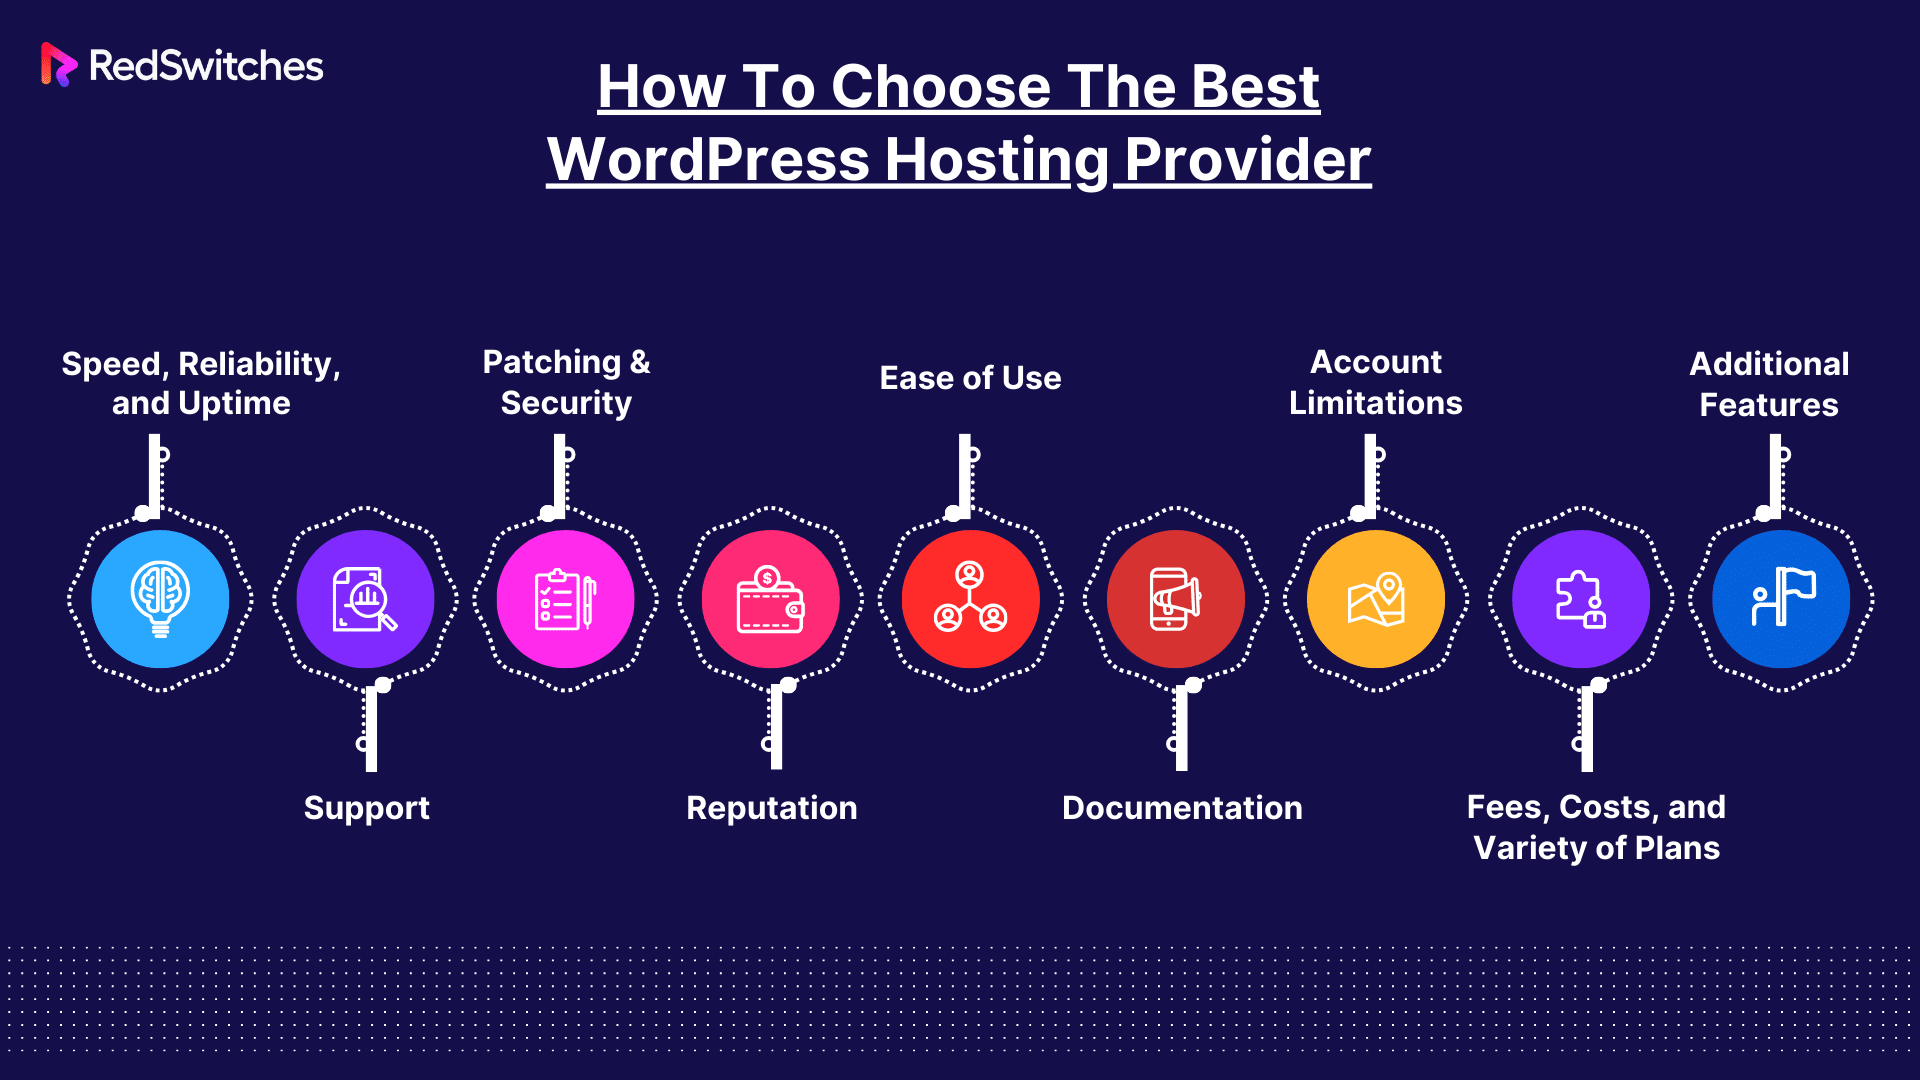 How Do I Choose The Best WordPress Hosting Provider For Me